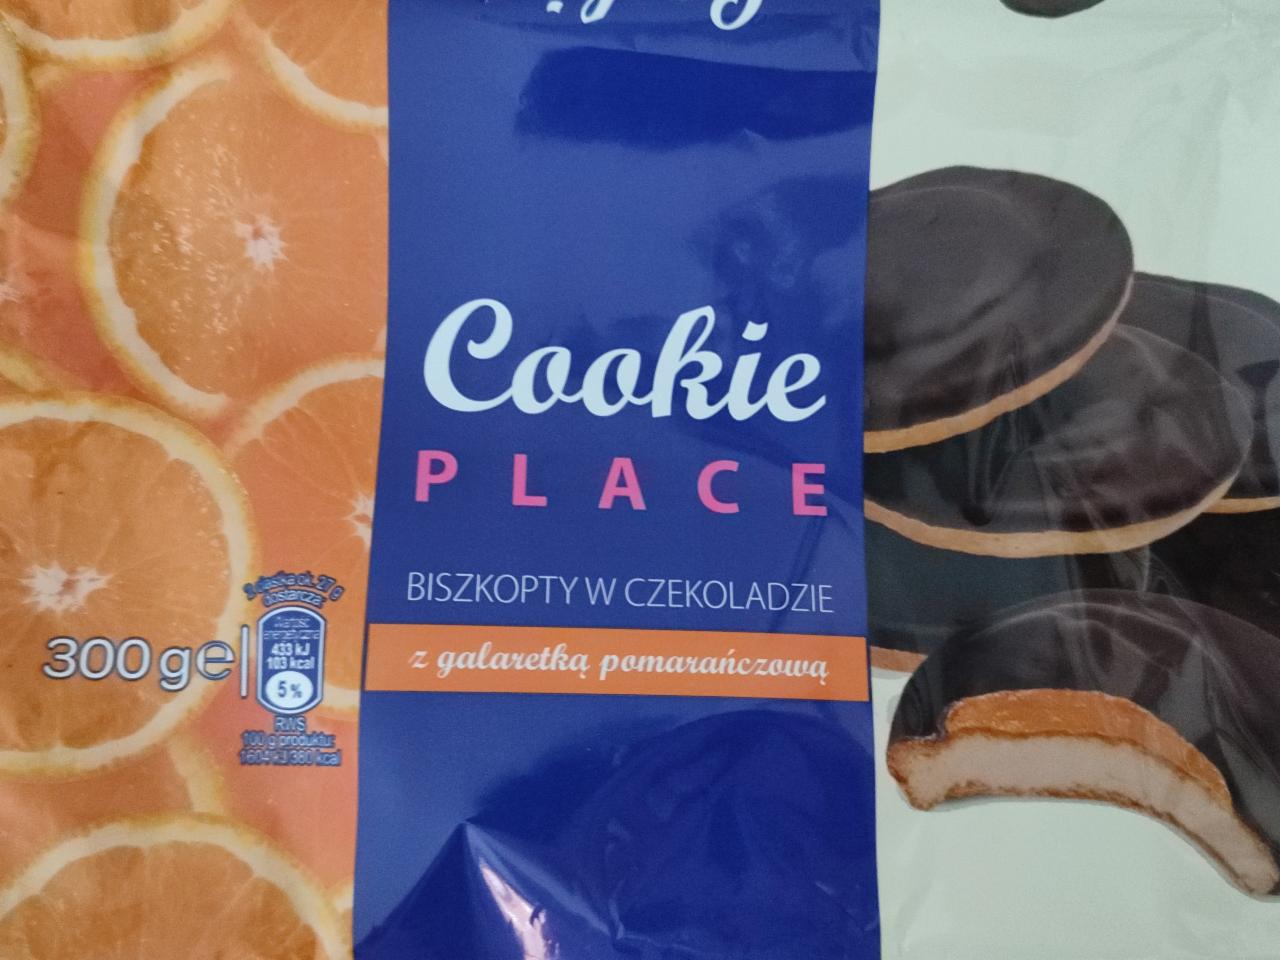 Zdjęcia - Cookie place Biszkopty w czekoladzie z galaretką pomarańczową